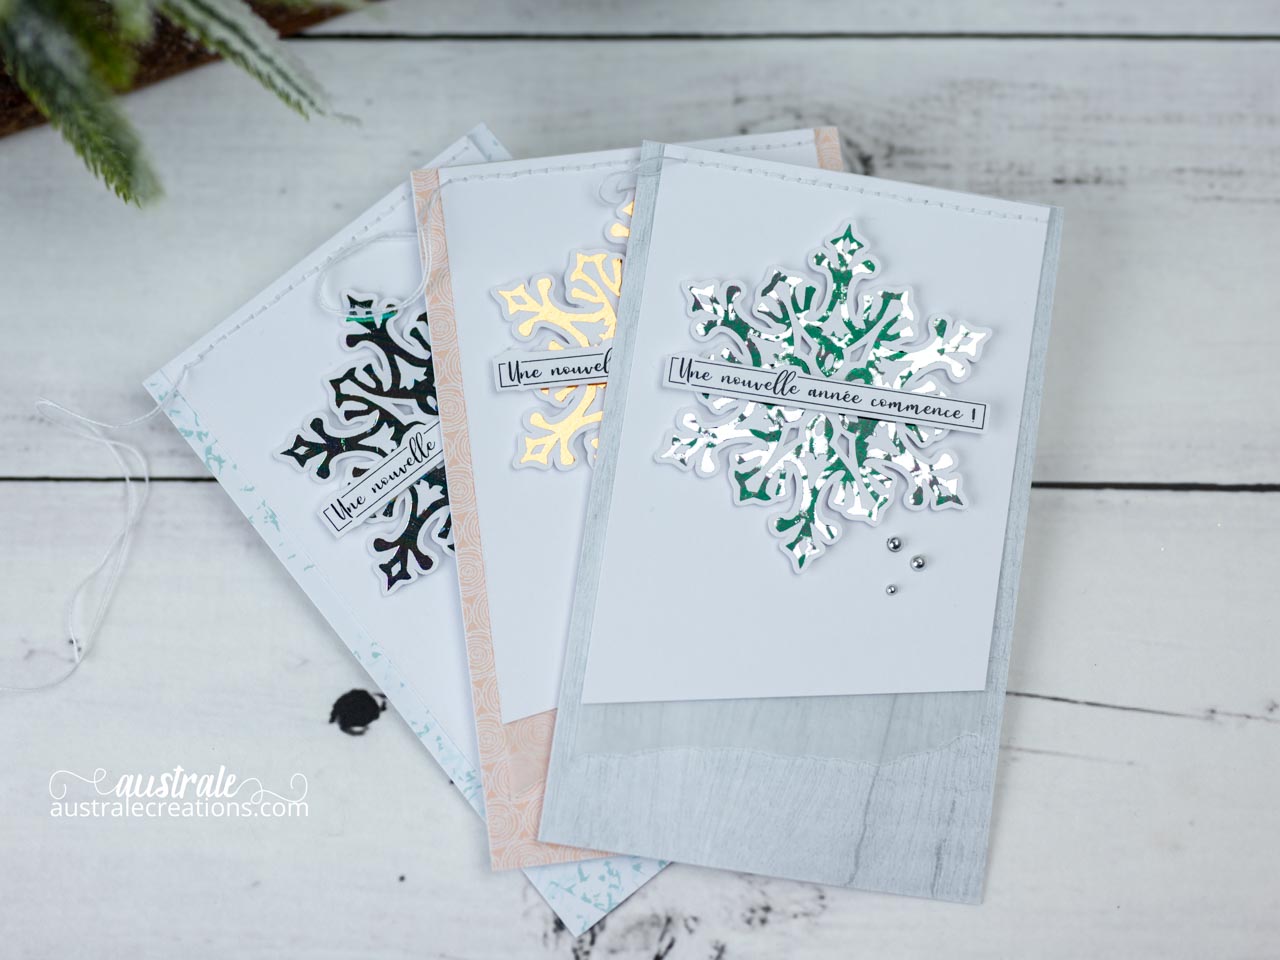 Création d'une carte de vœux en série avec papiers de 4enscrap, flocons embellis au foil et étiquette maison.